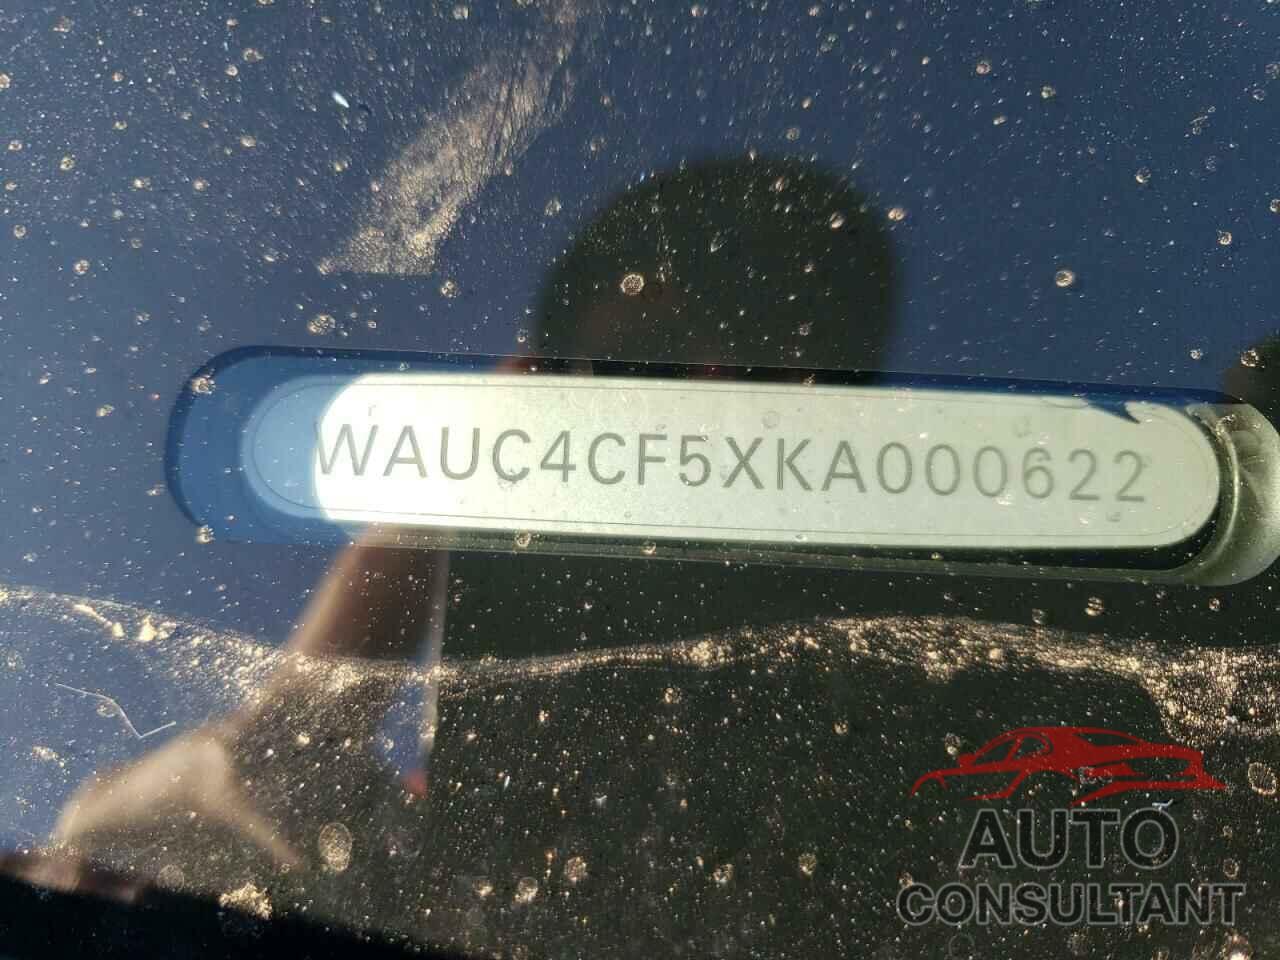 AUDI S5/RS5 2019 - WAUC4CF5XKA000622